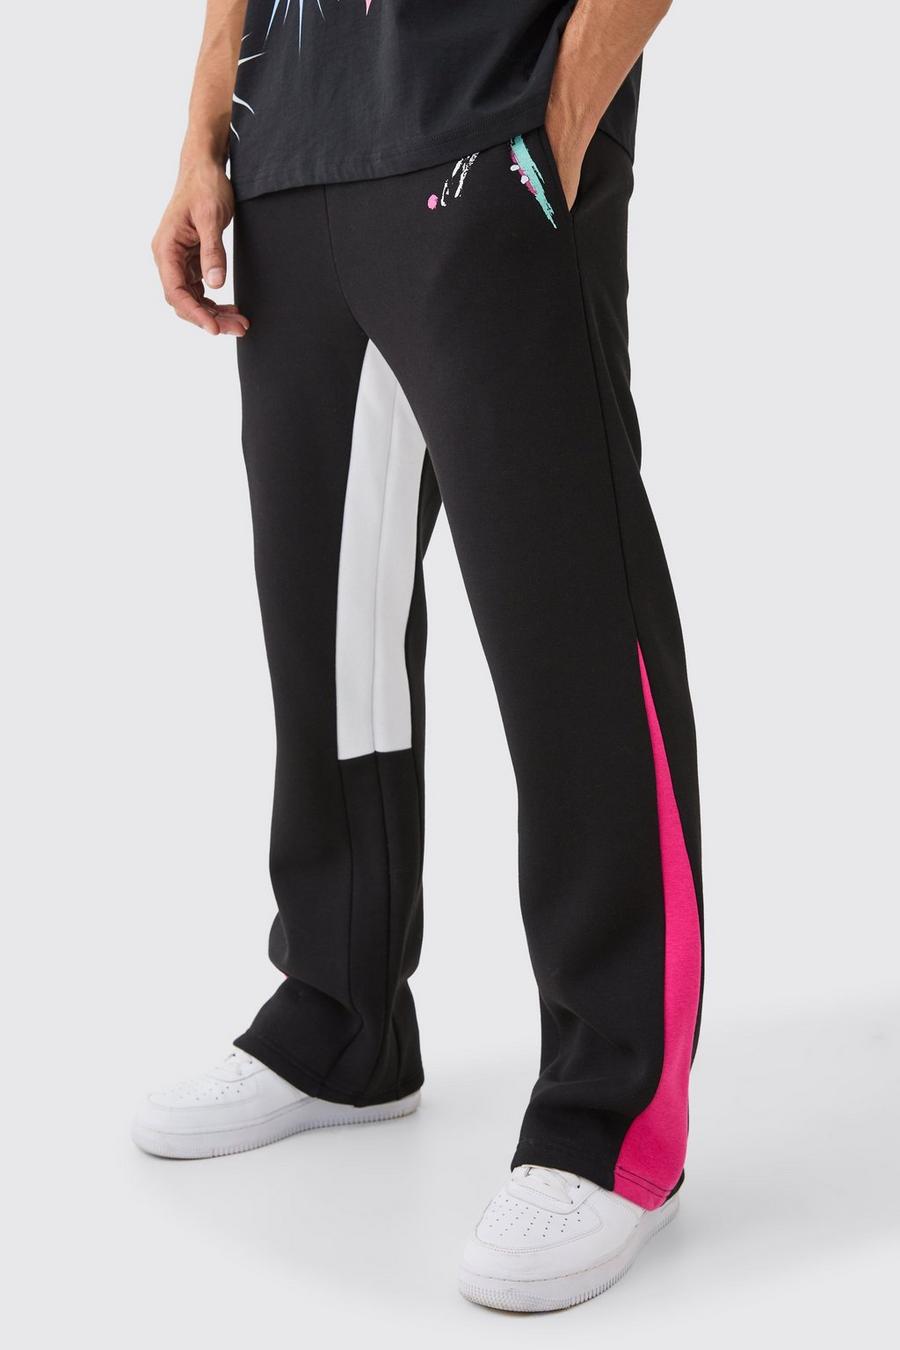 Pantaloni tuta Core con inserti e schizzi di colore, Black